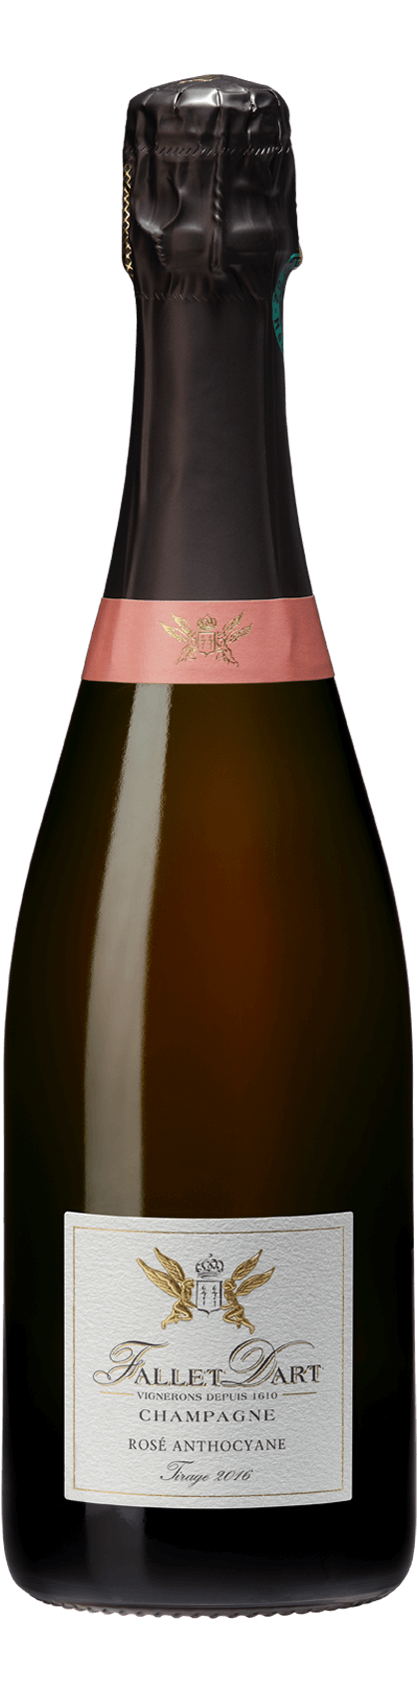 Rosé Anthocyane Brut - Champagne Fallet Dart